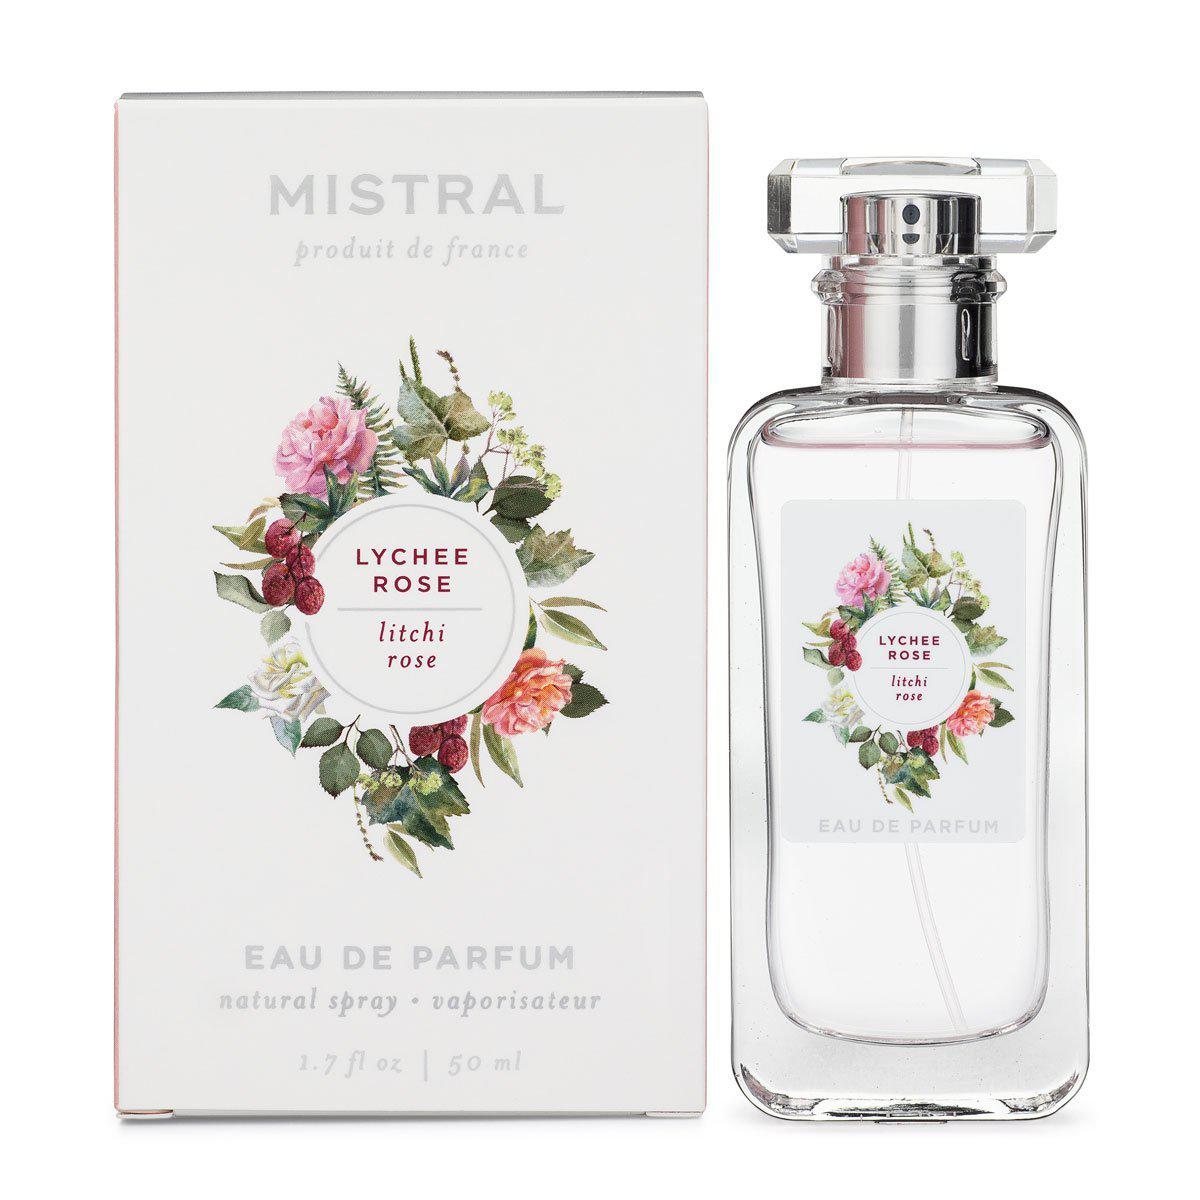 Mistral - Eau de Parfum - Litchi Rose